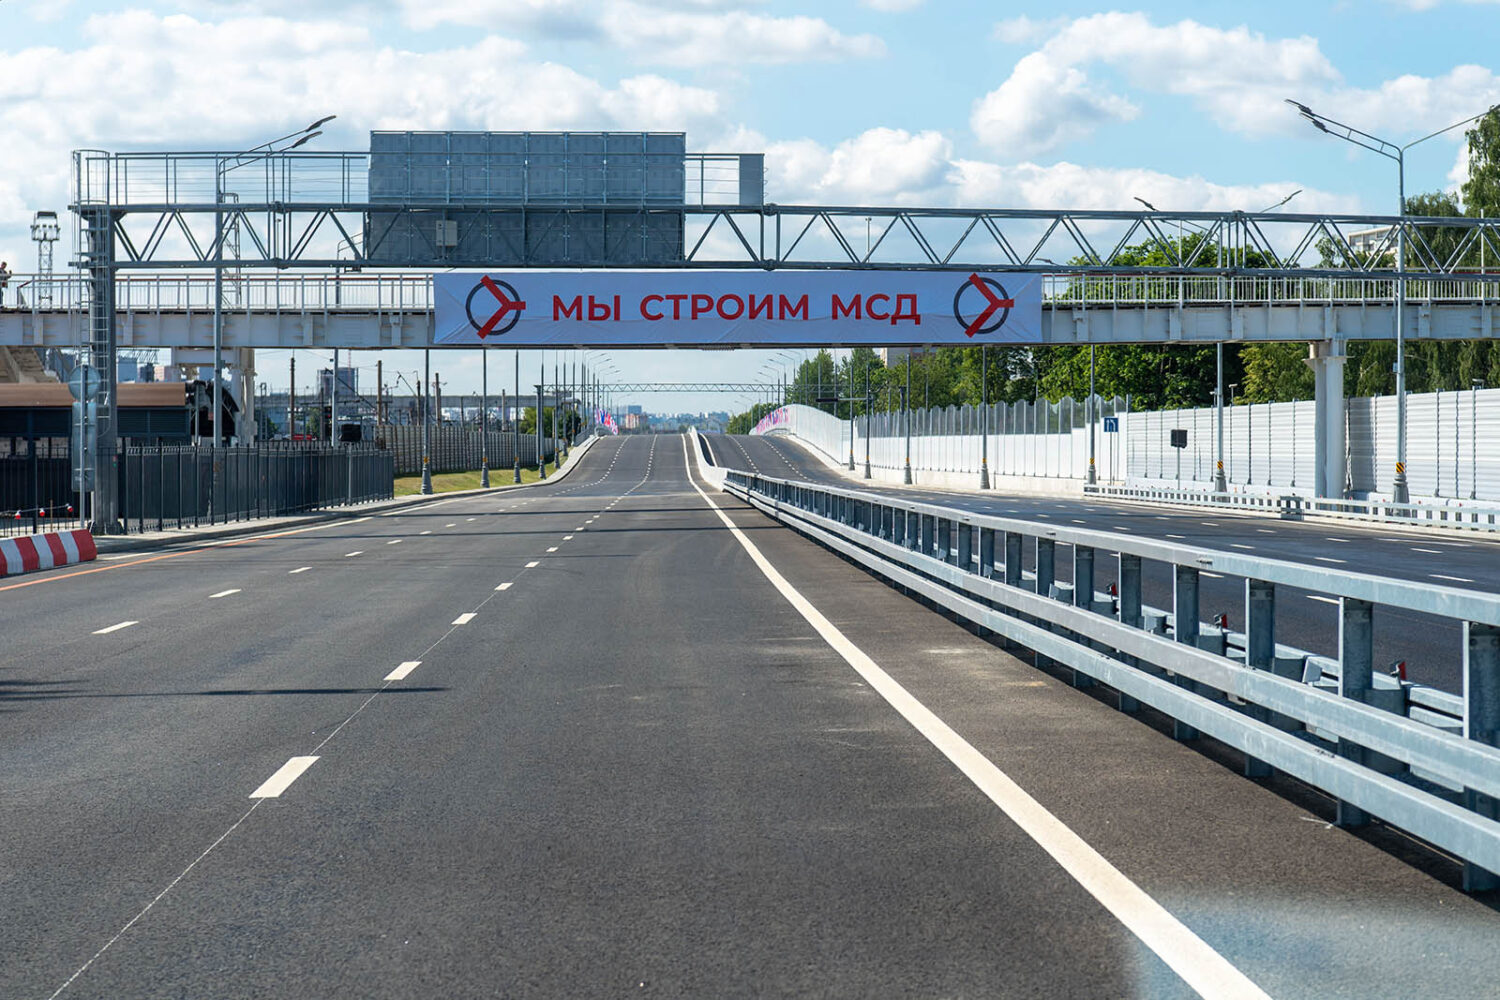 Два участка МСД открыты для движения от Шоссейного проезда до станции "Курьяново"